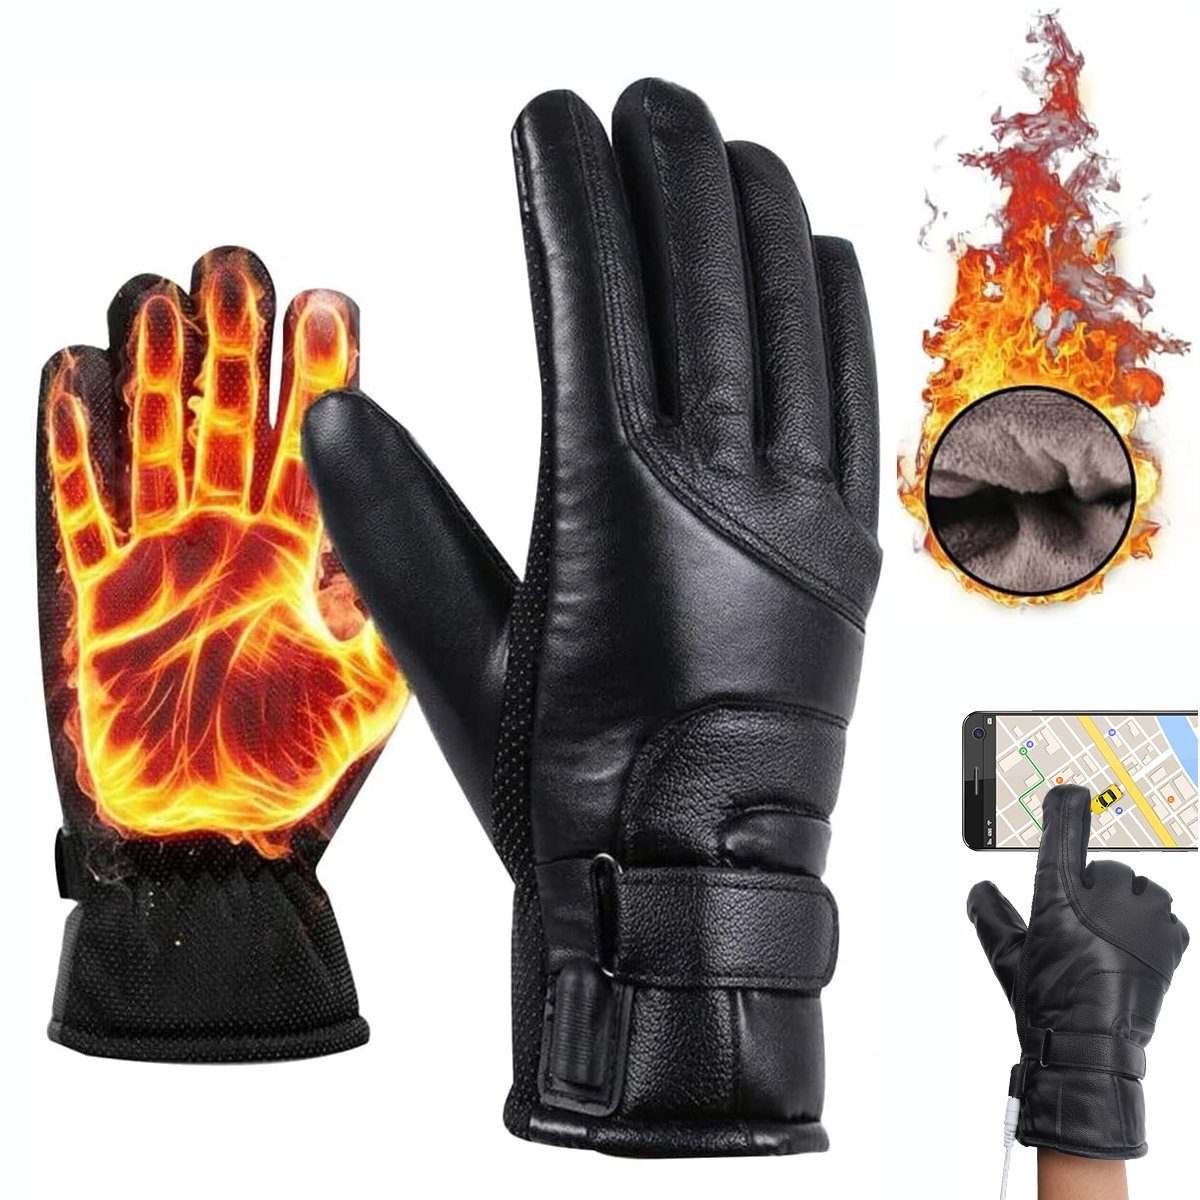 Bedee Skihandschuhe Beheizbare Thermo Handschuhe mit 5000mAh Akku (Touchscreen Elektrische Beheizte Handschuhe Wasserdicht Unisex) Winterhandschuhe für Herren Damen - 3 Stufen Temperaturregler Heizung